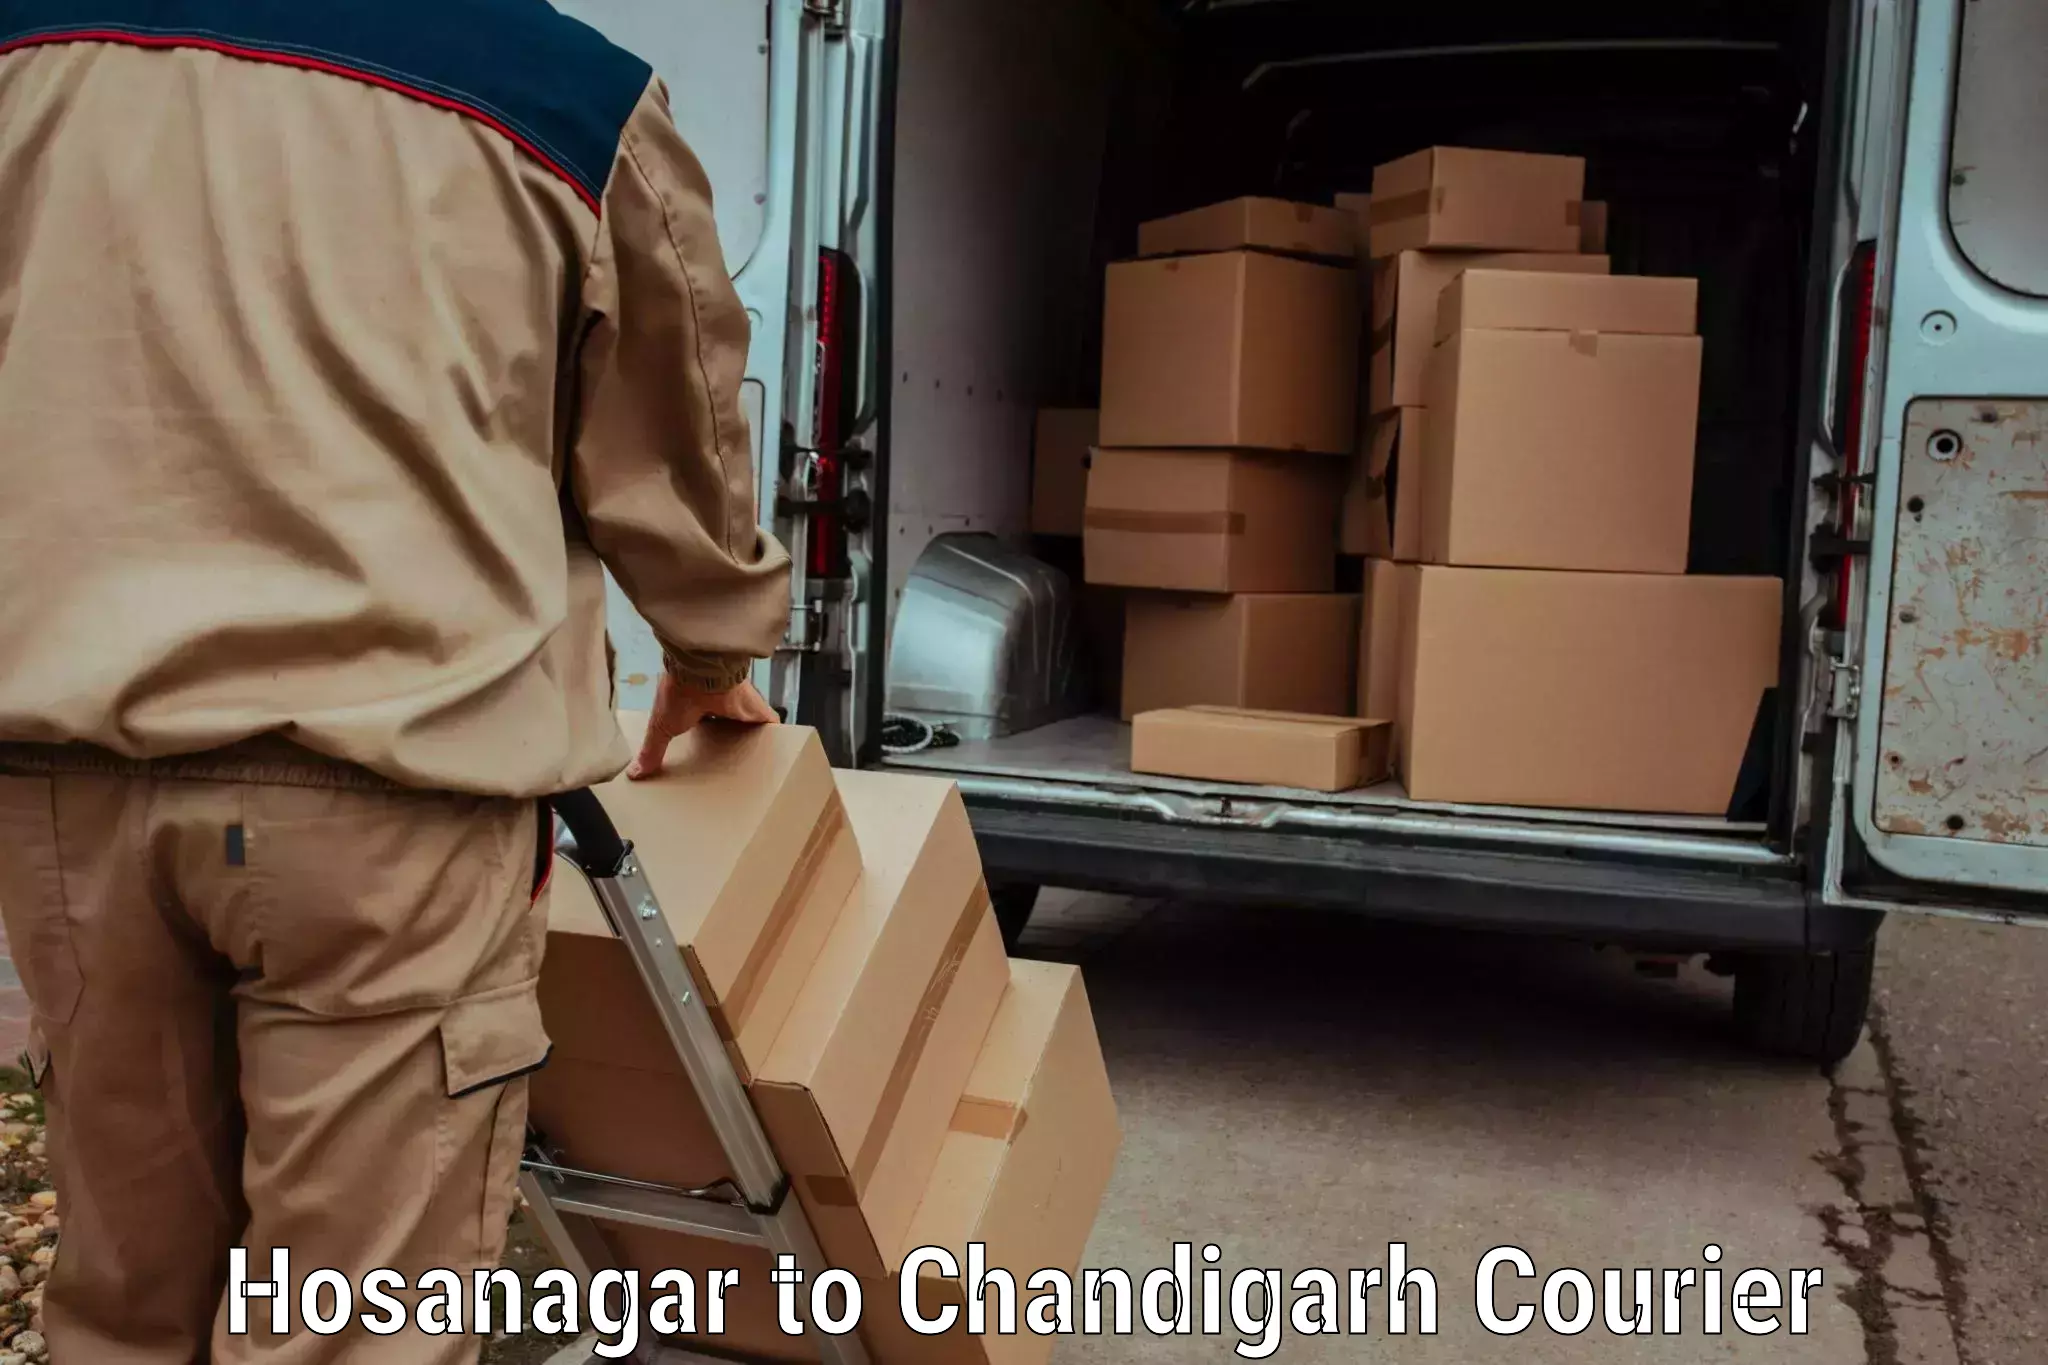 Same day luggage service Hosanagar to Chandigarh